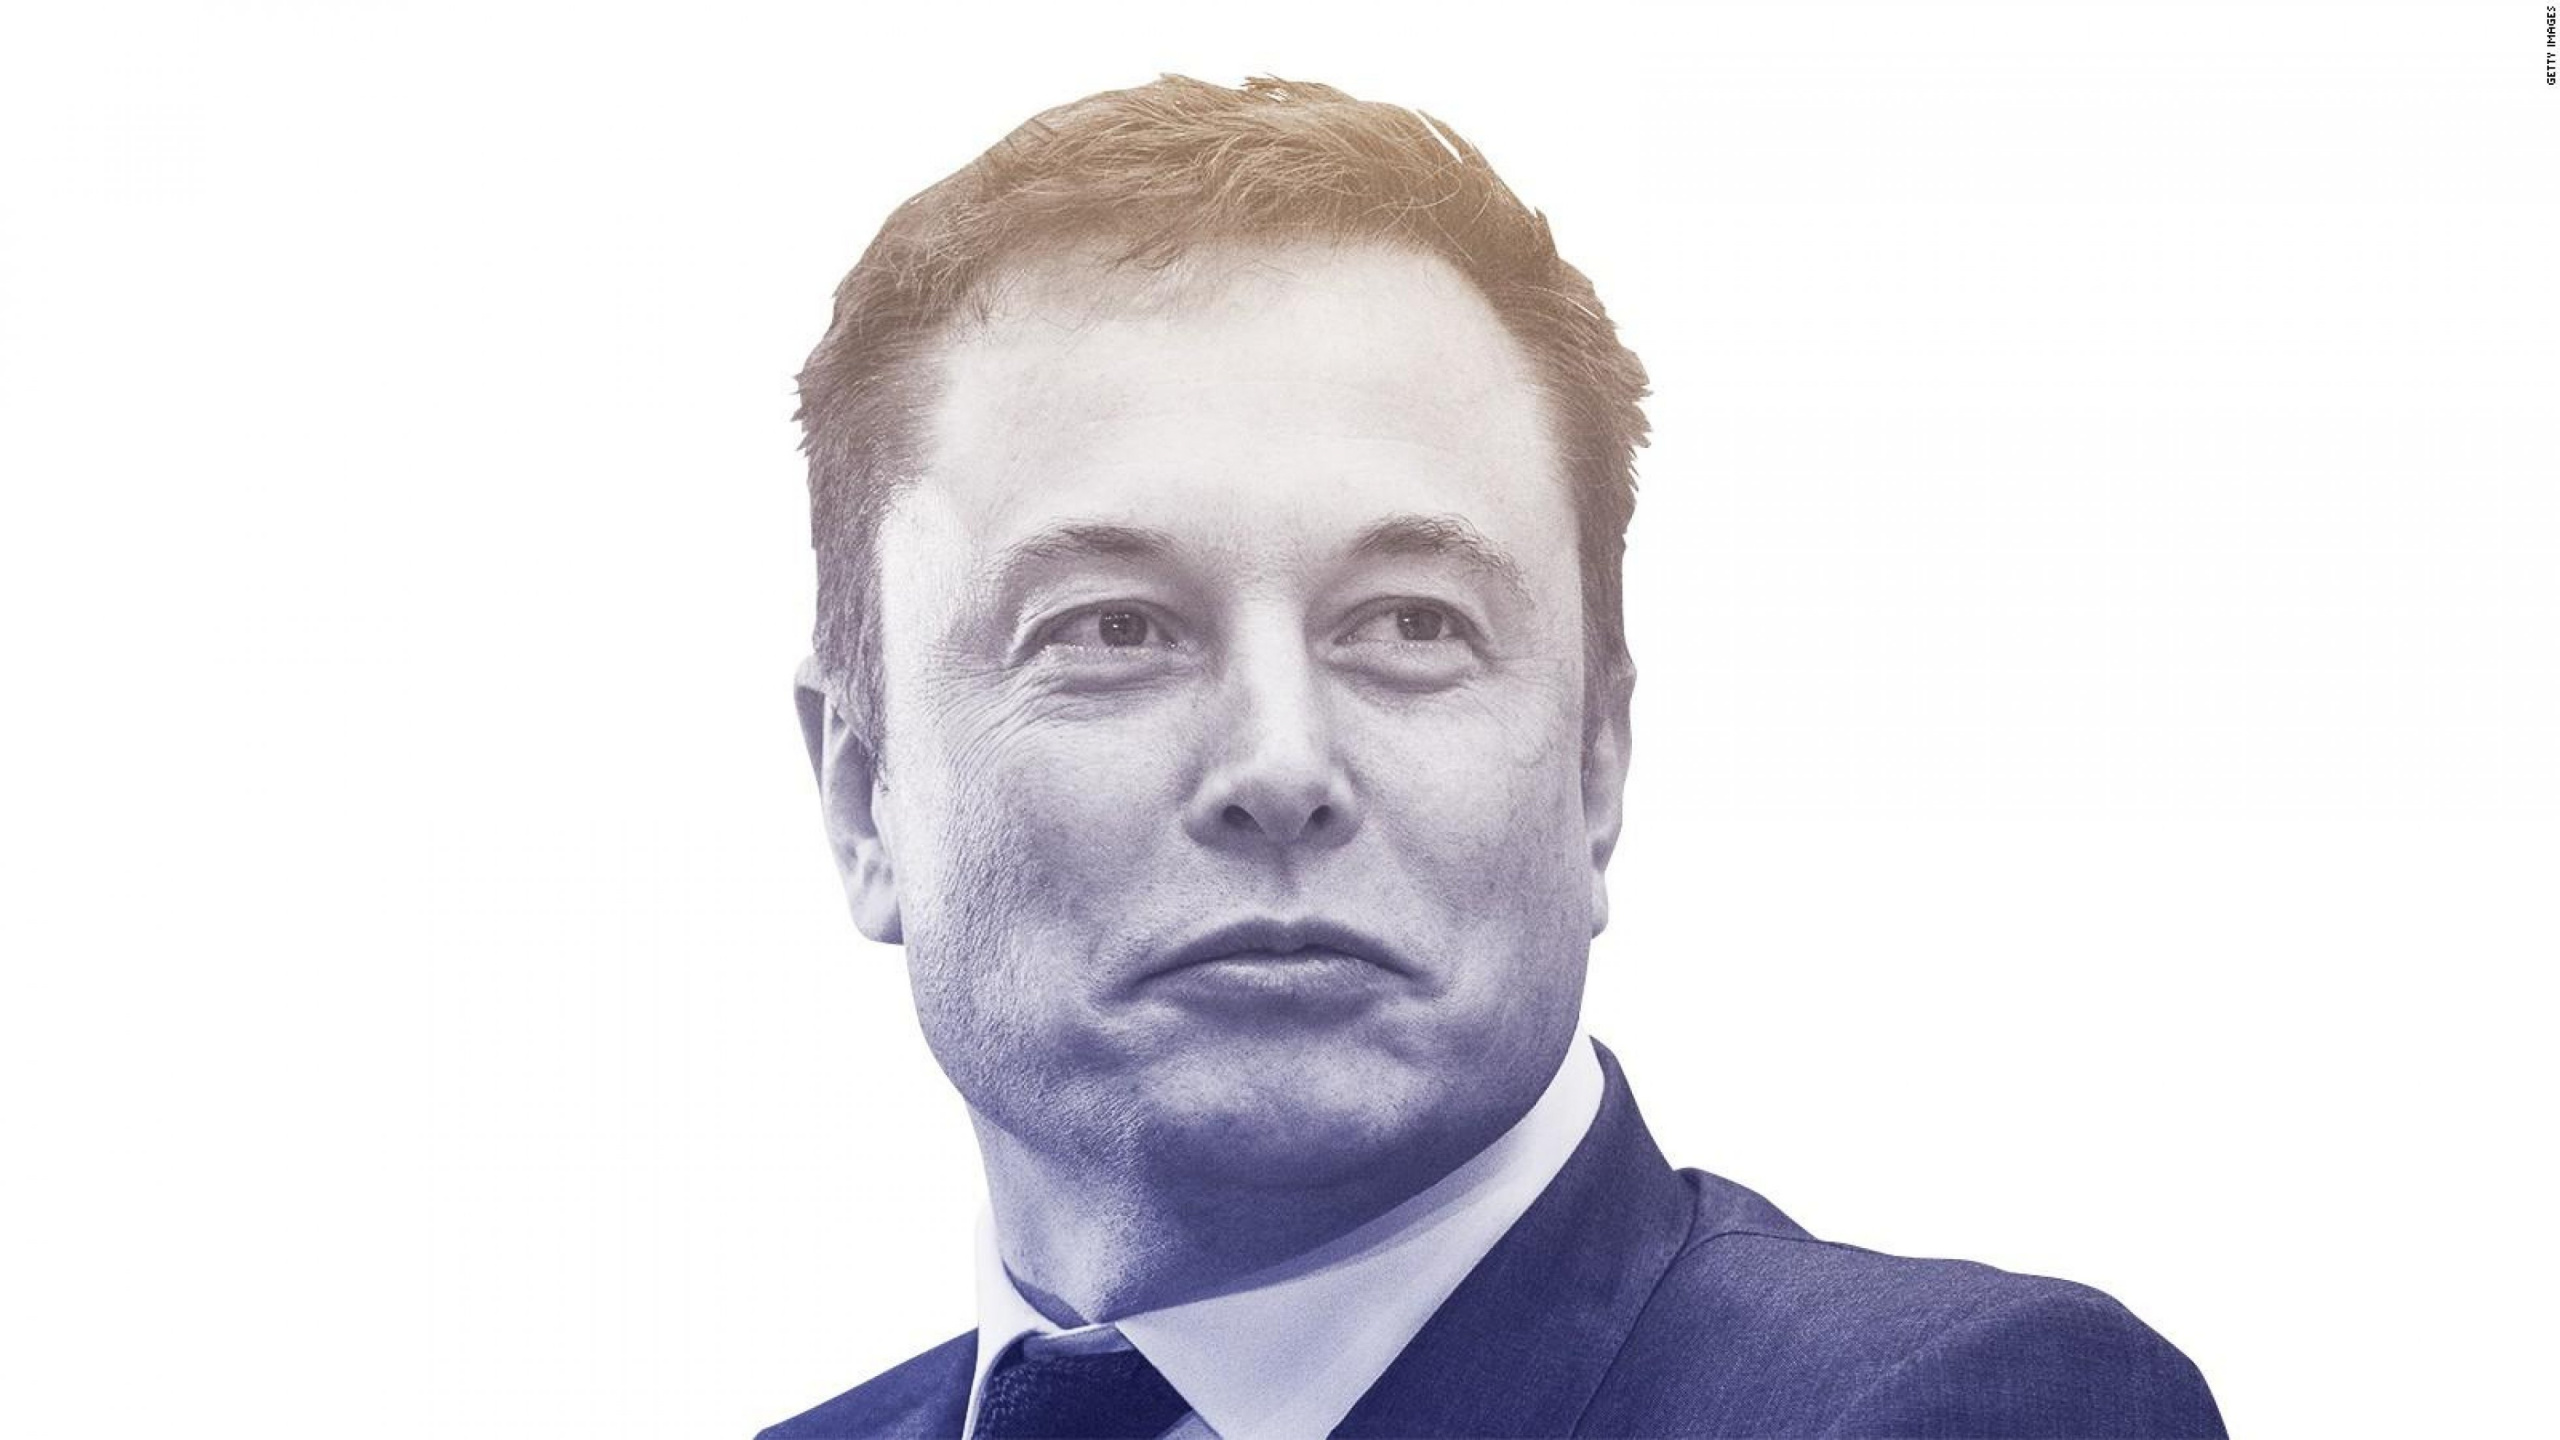 Elon Musk, Cabeza, Barbilla, Entrecejo, Retrato. Wallpaper in 2560x1440 Resolution